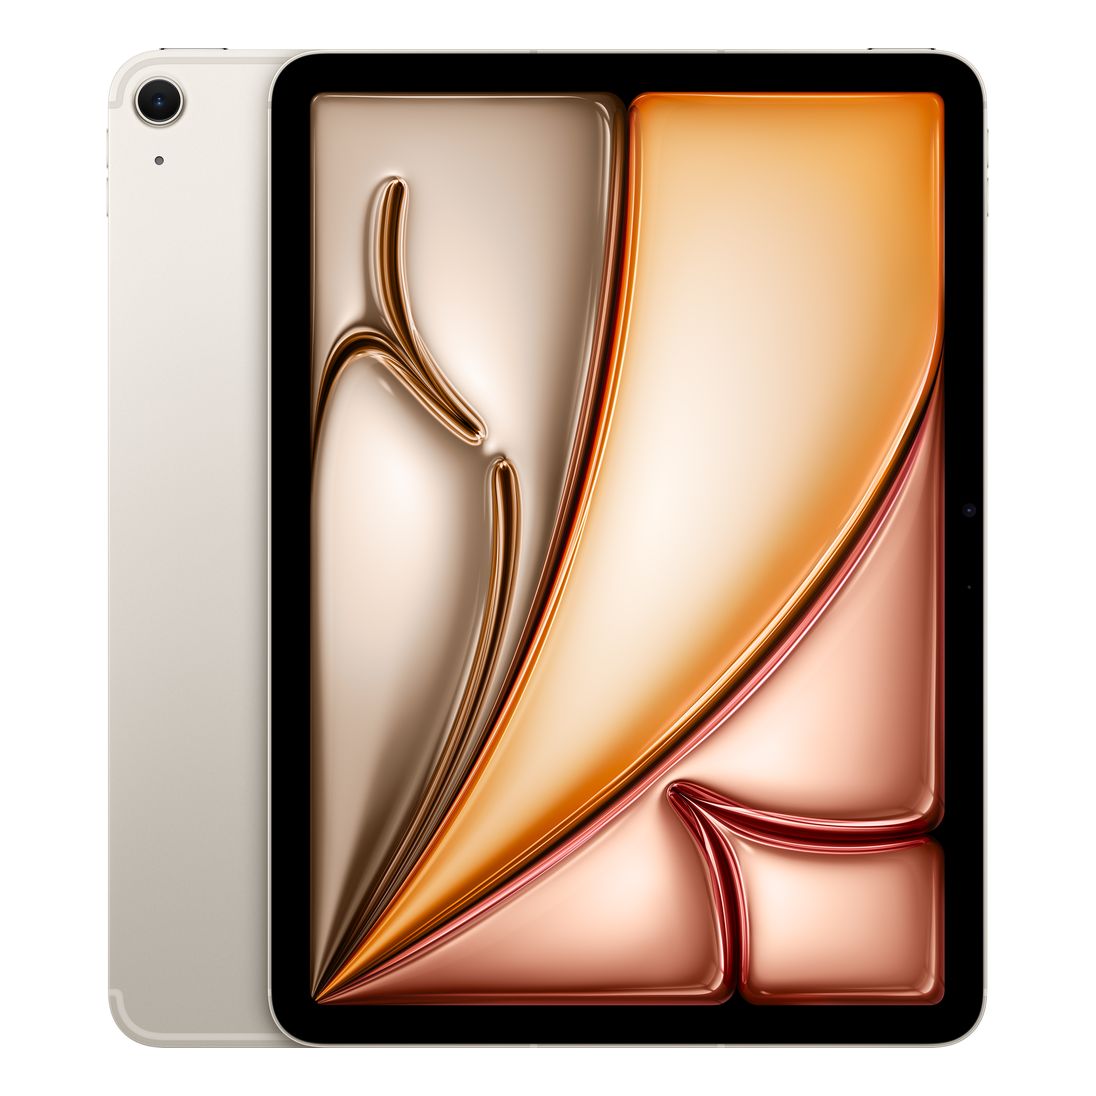 Apple 11-inch iPad Air (M2) Wi-Fi 128GB - Starlight